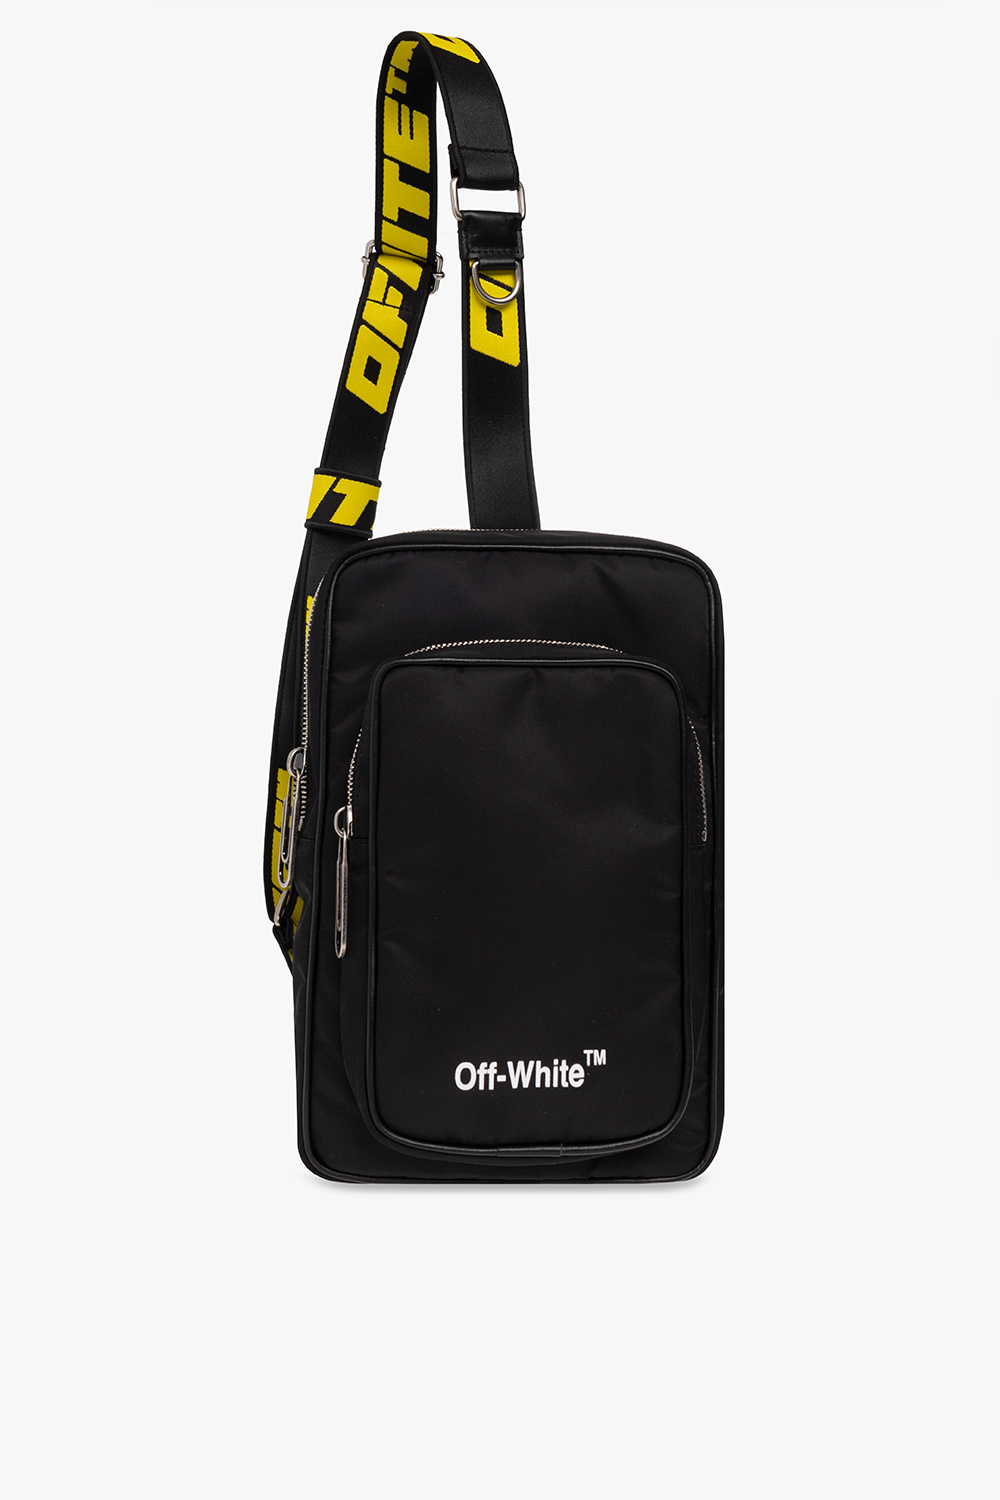 Off-White Shoulder bag with logo, Men's Bags